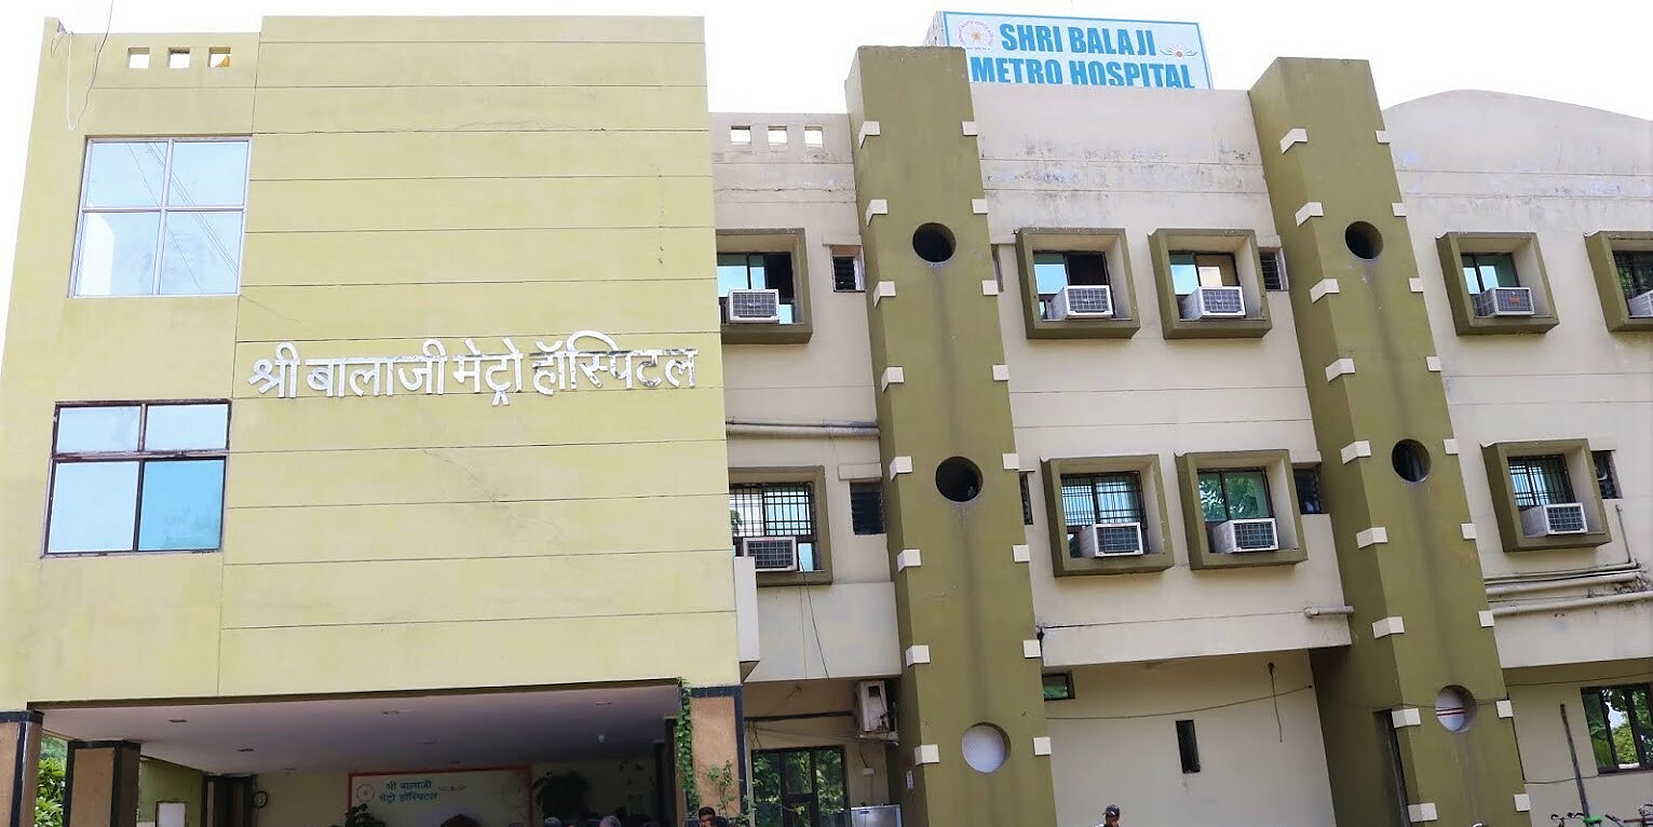 Shri Balaji Metro Hospital